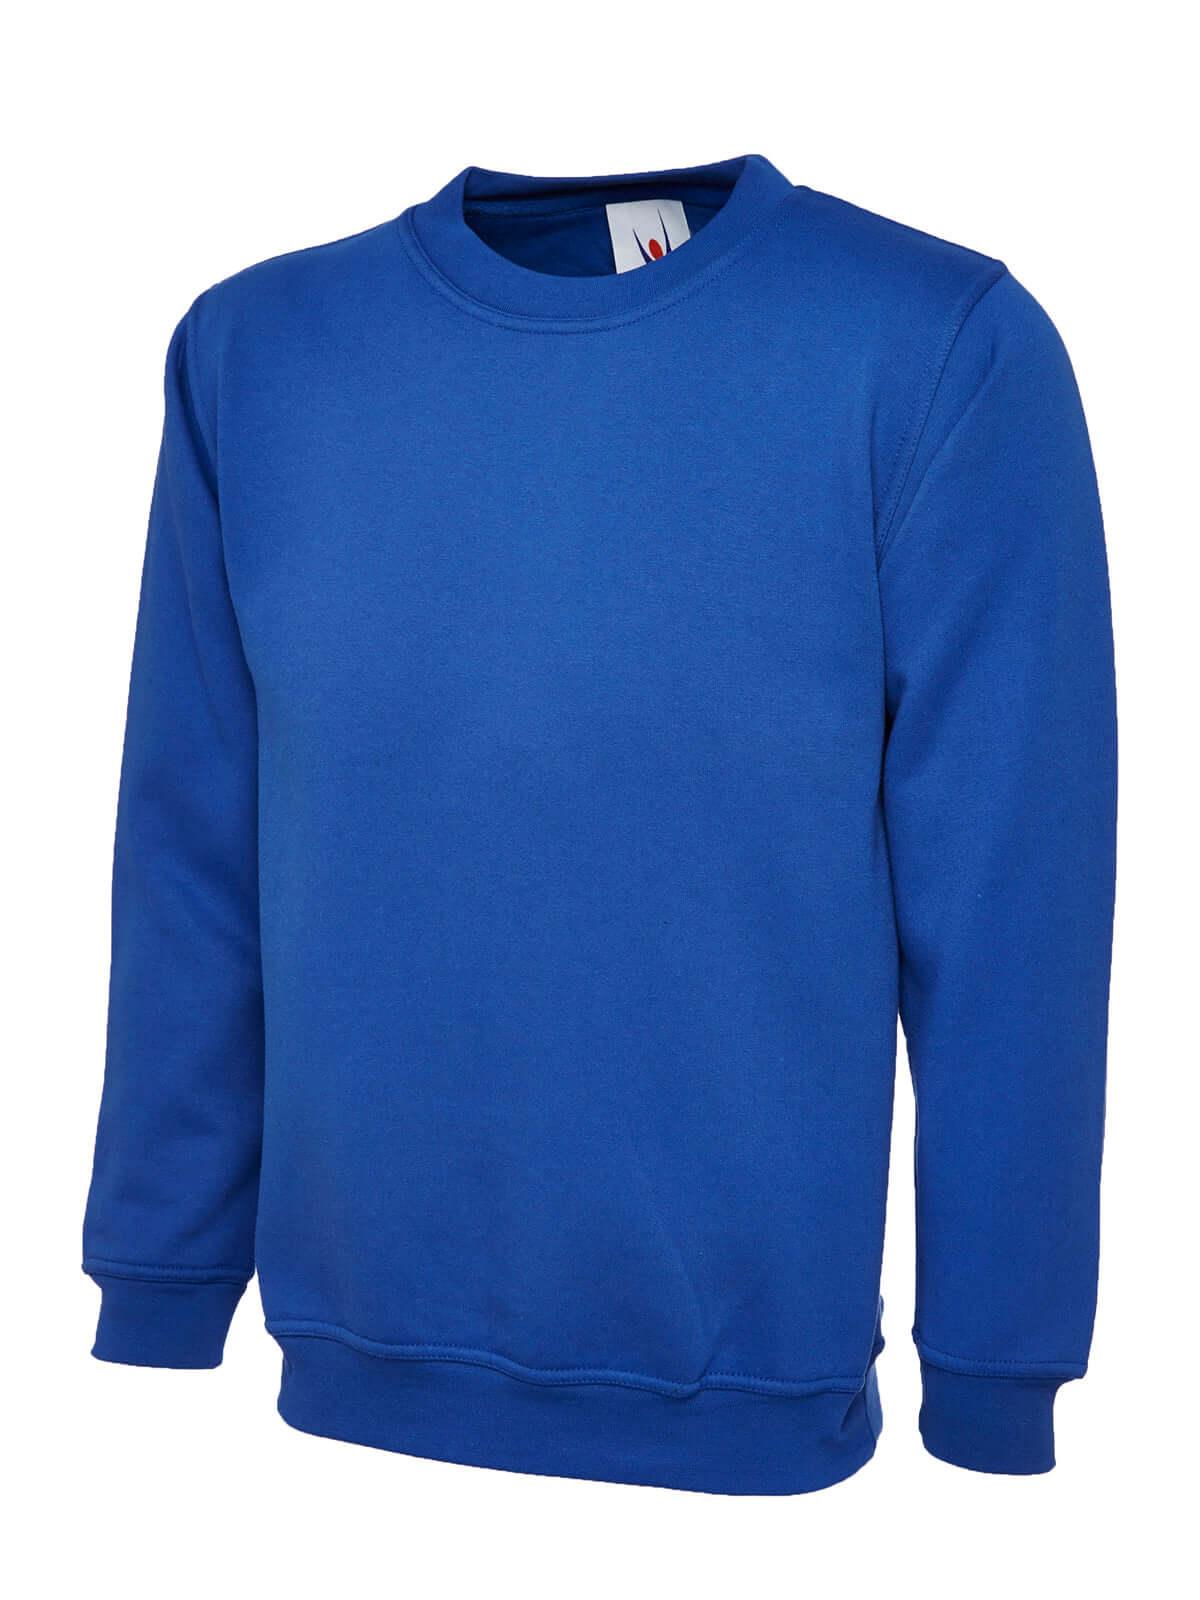 Pegasus Uniform Classic Sweatshirt - Royal Blue